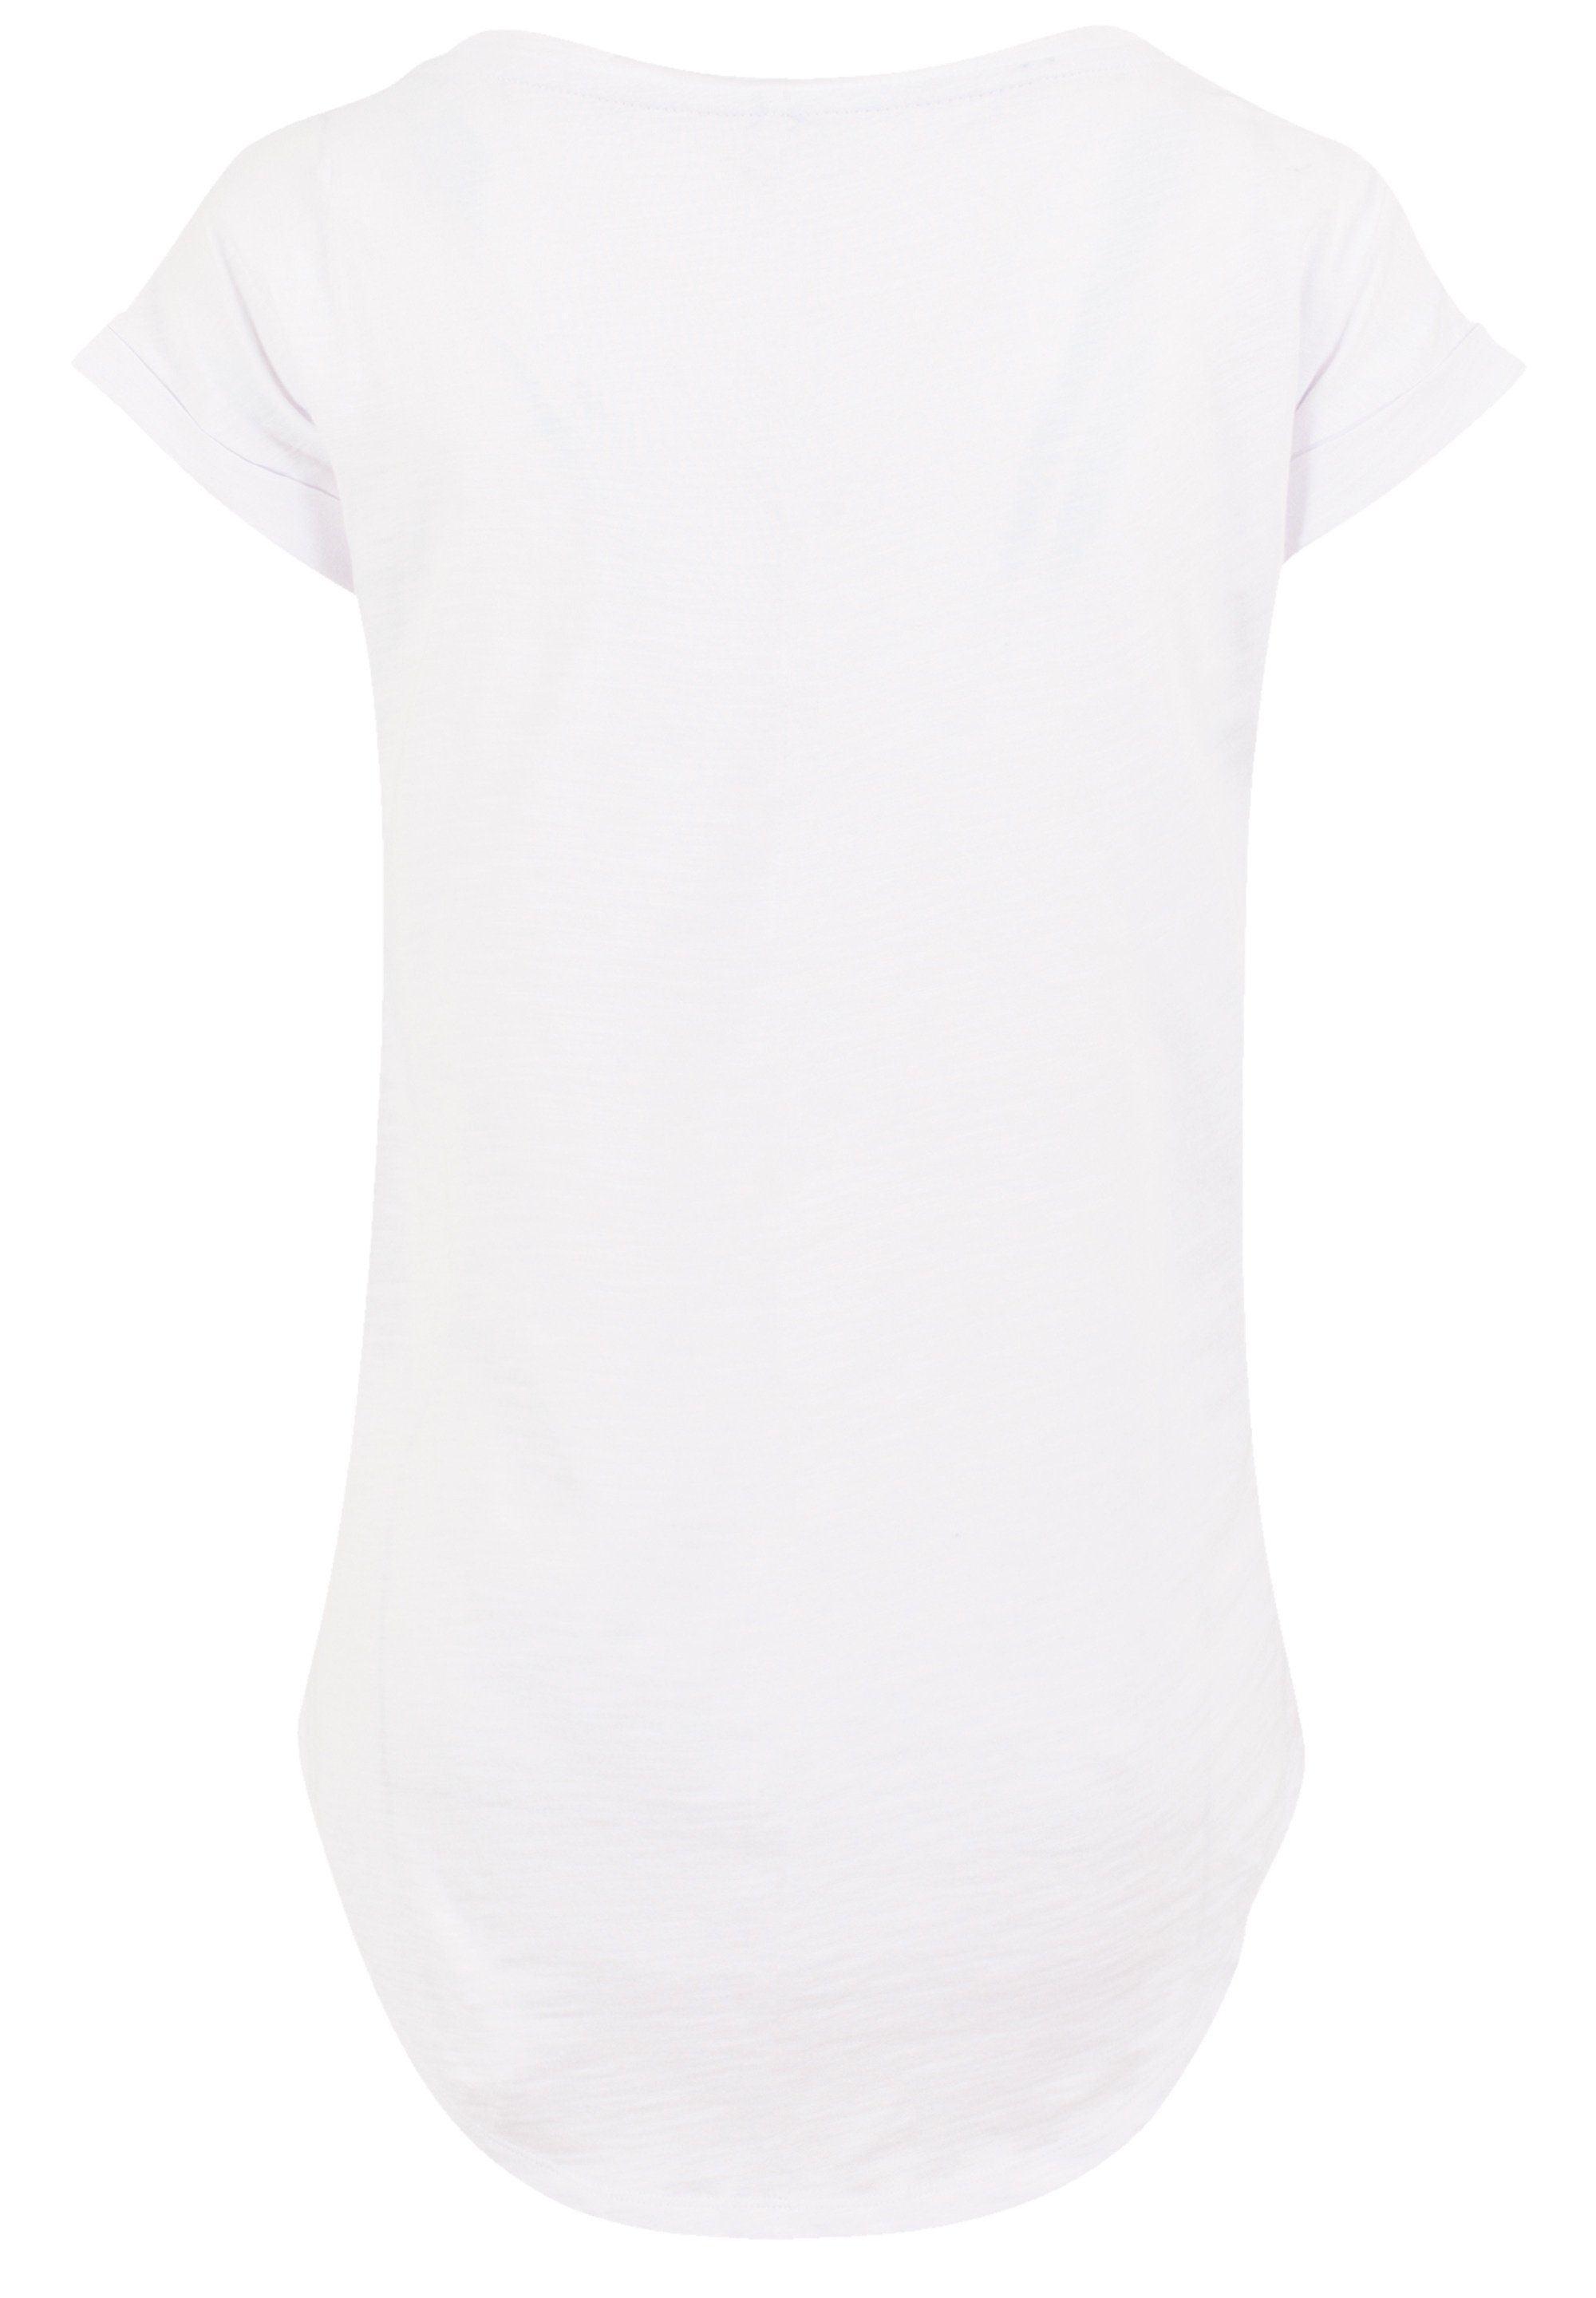 F4NT4STIC T-Shirt Qualität, Damen Disney geschnittenes Premium Dreamland extra lang Hinten Dumbo T-Shirt